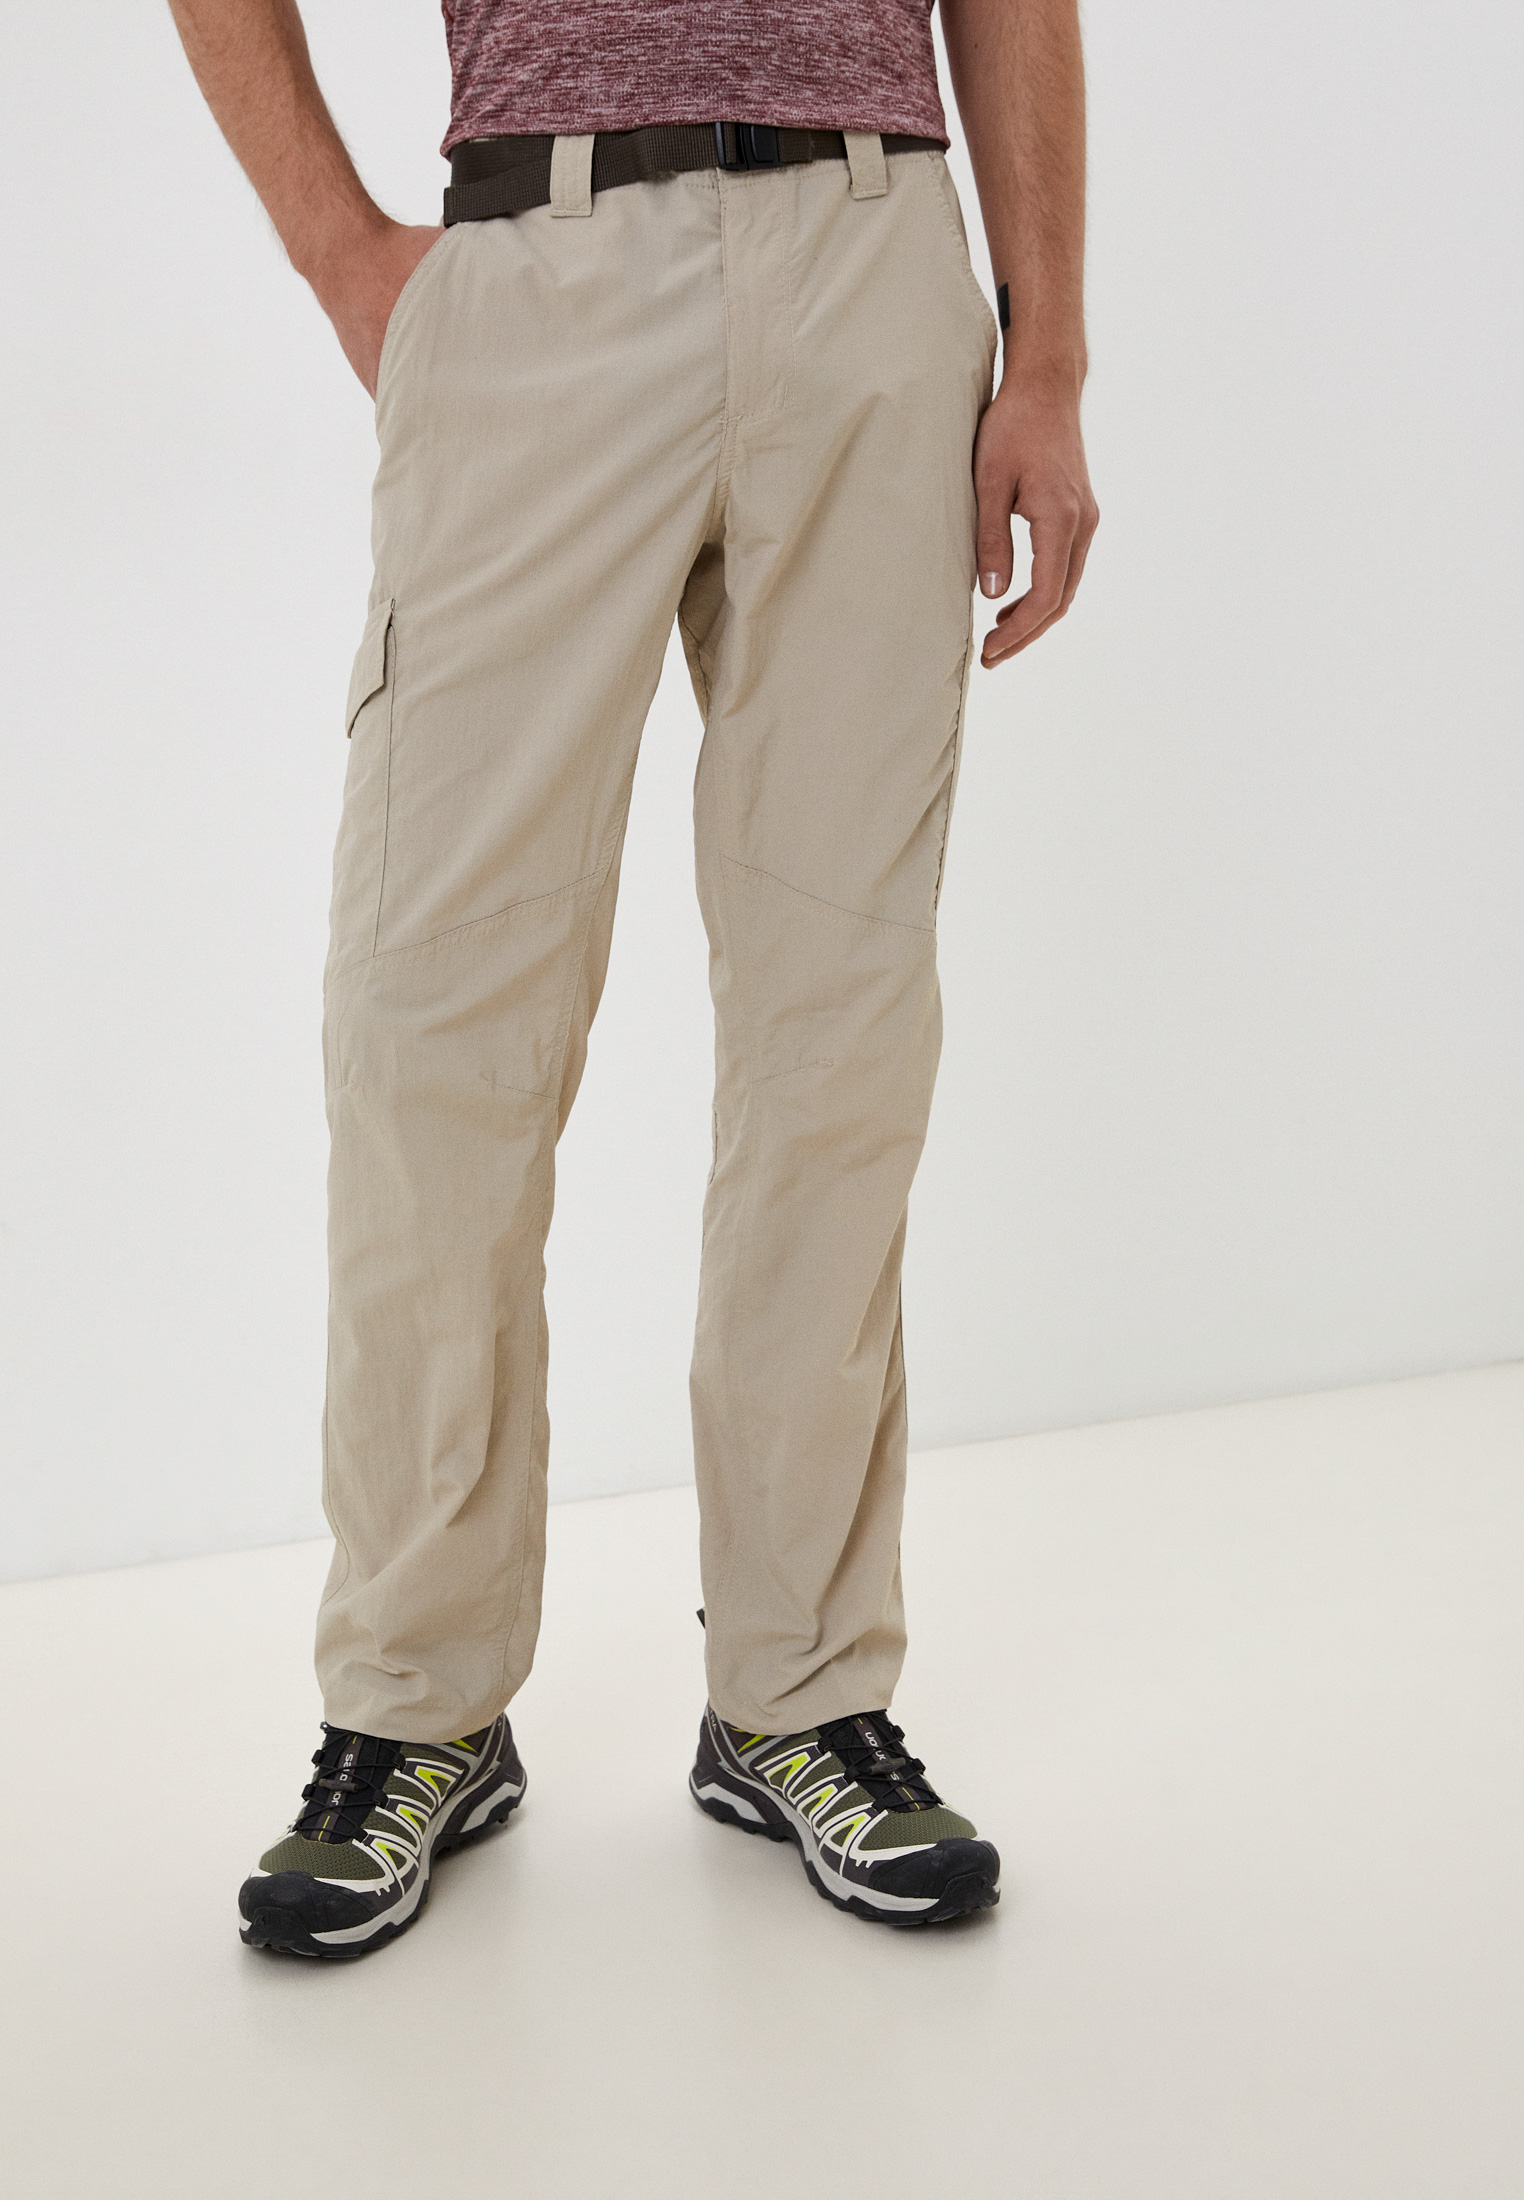 Брюки спортивные Columbia Silver Ridge™ Cargo Pant, цвет: бежевый,MP002XM0SAG3 — купить в интернет-магазине Lamoda